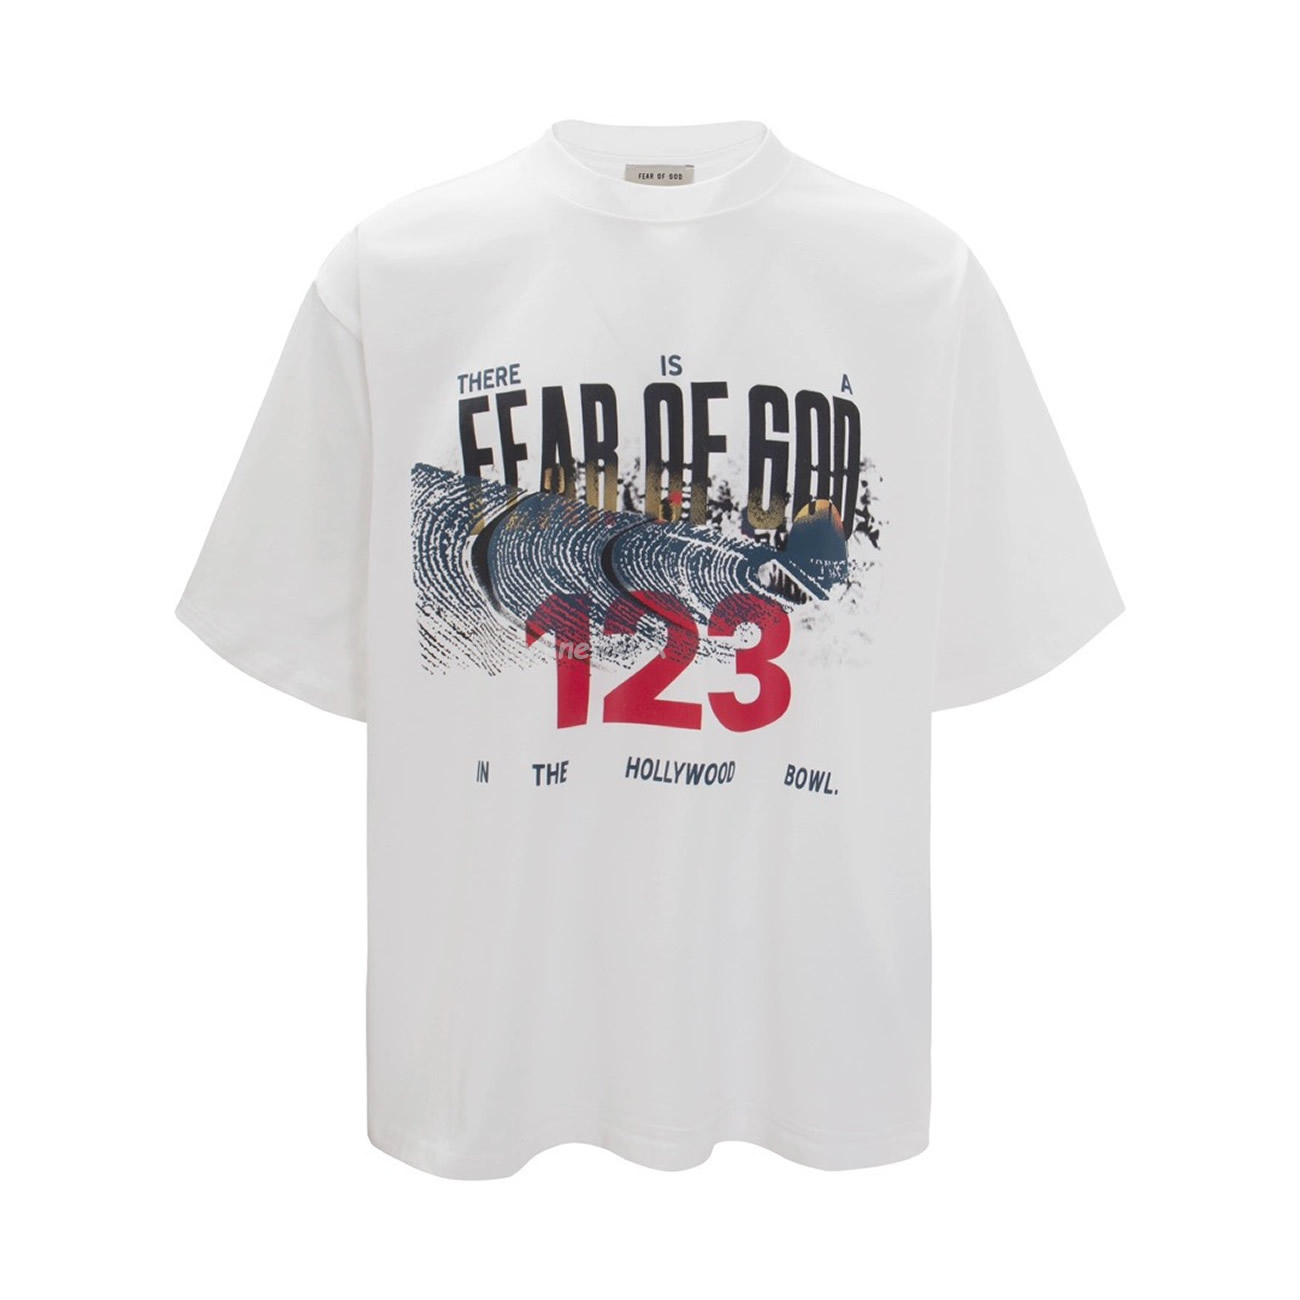 FEAR OF GOD x RRR 123 Co branded Letter Printed Short Sleeve T-shirt White